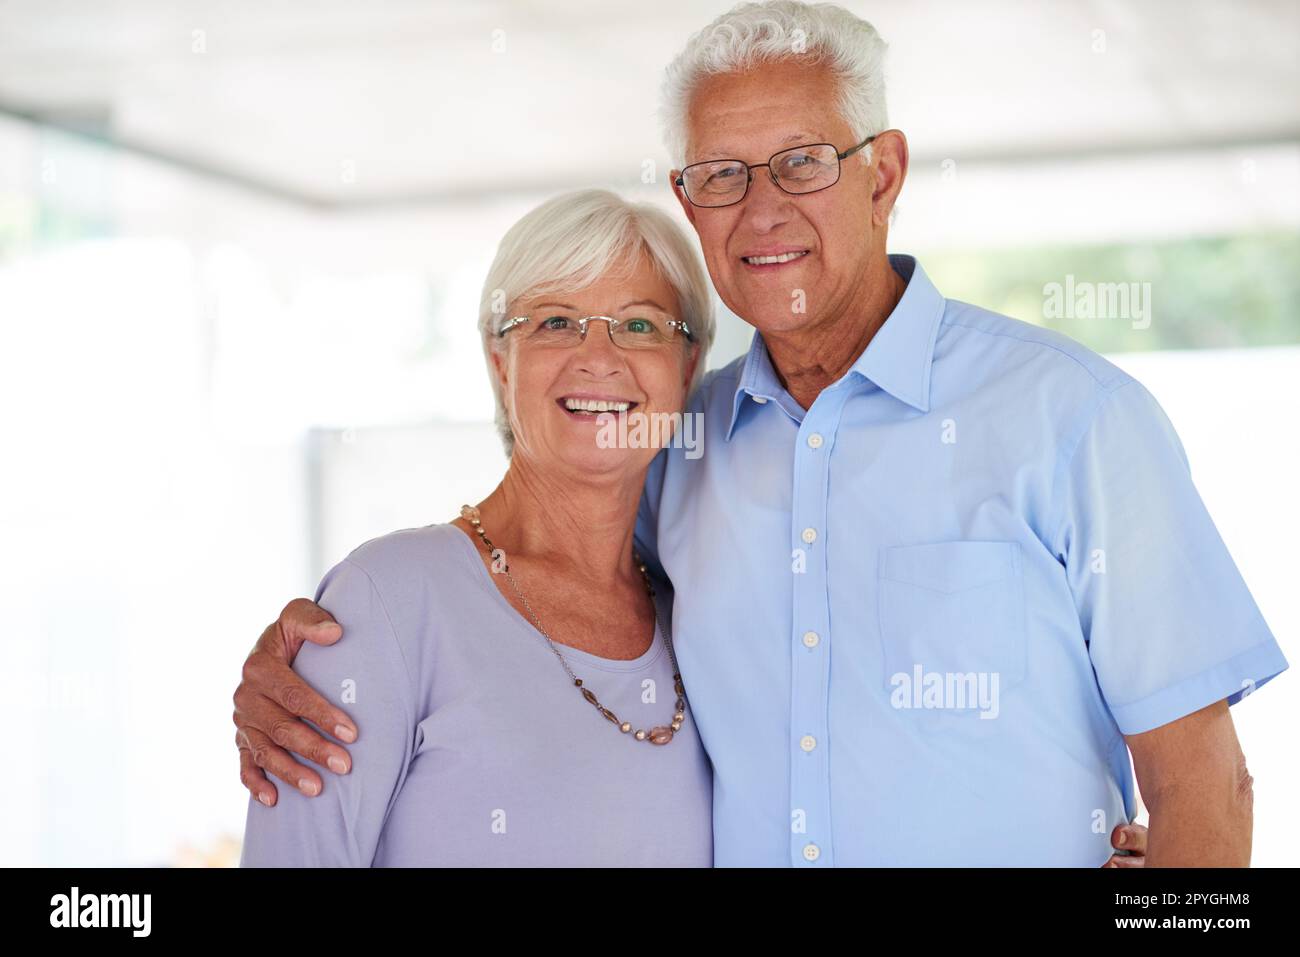 Unsere Liebe ist eine endlose Geschichte. Porträt eines glücklichen älteren Ehepaars. Stockfoto